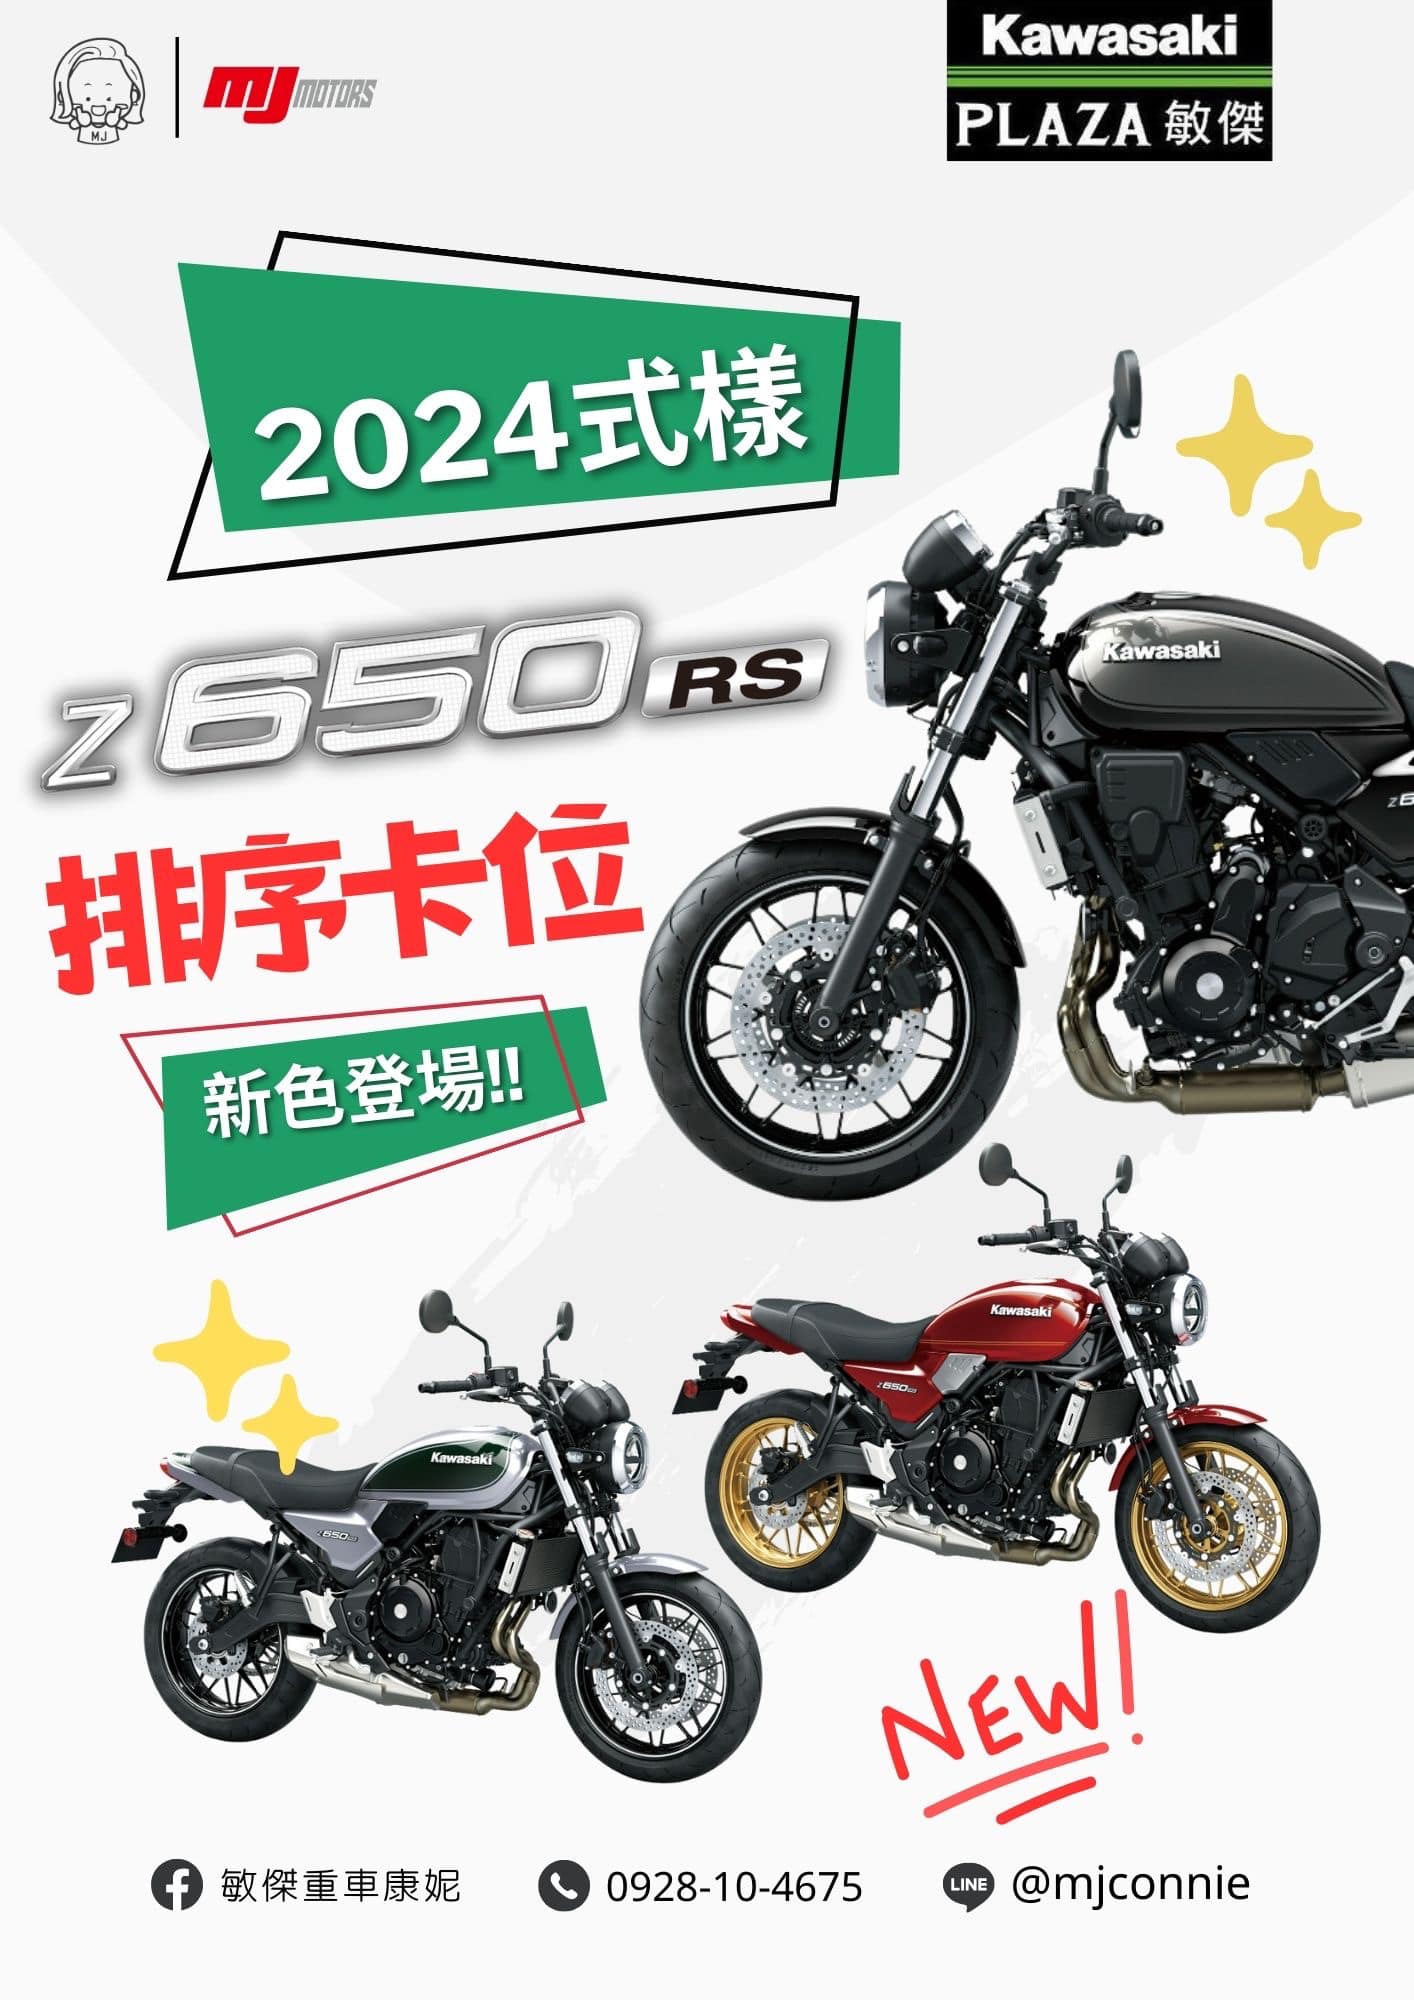 【敏傑車業資深銷售專員 康妮 Connie】Kawasaki Z650RS - 「Webike-摩托車市」 『敏傑康妮』Kawasaki Z650RS 2024式樣 三種超好看配色公布啦！現在就找康妮排序搶頭批～卡位先了